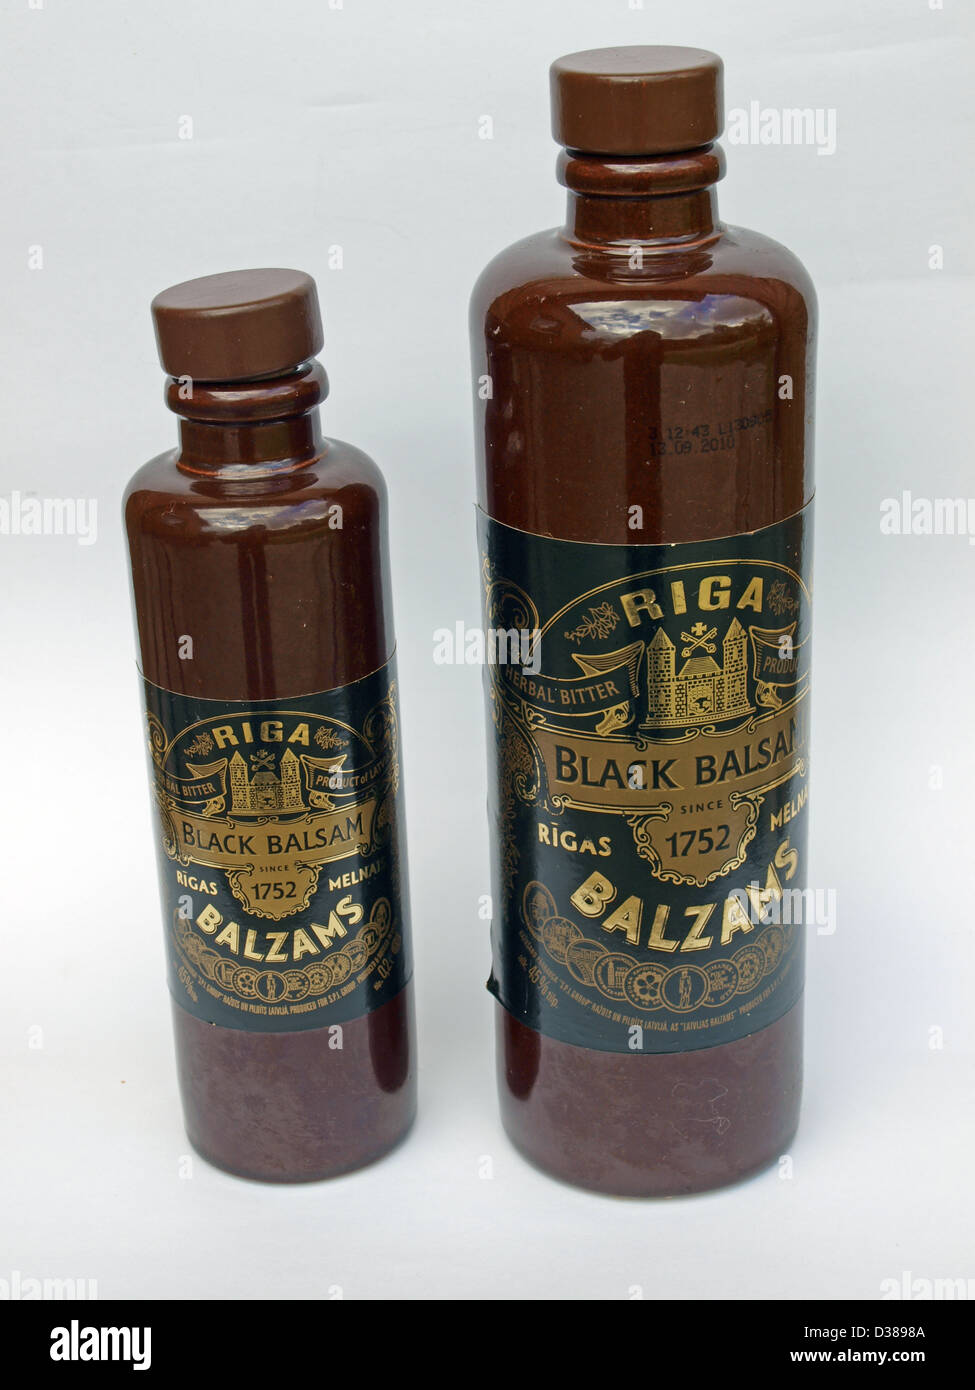 Deux bouteilles en céramique avec boisson alcoolisée - Lettonie Riga Black Balsam Banque D'Images